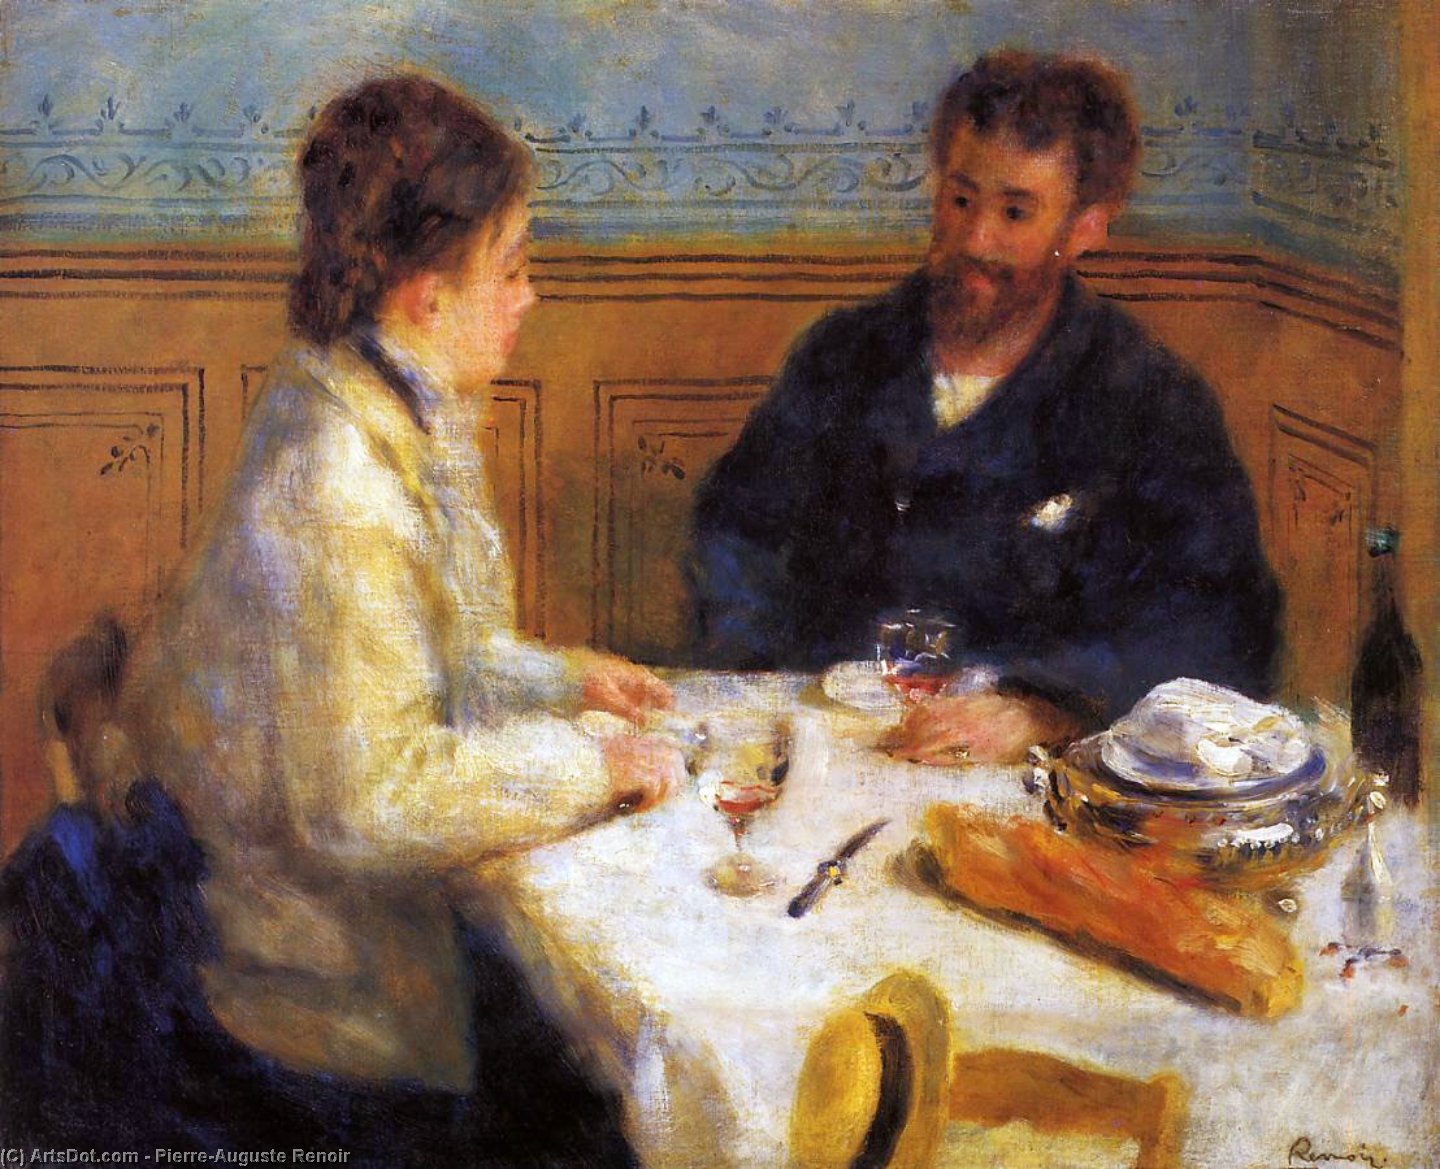 Ordinare Riproduzioni Di Quadri Il pranzo, 1879 di Pierre-Auguste Renoir (1841-1919, France) | ArtsDot.com